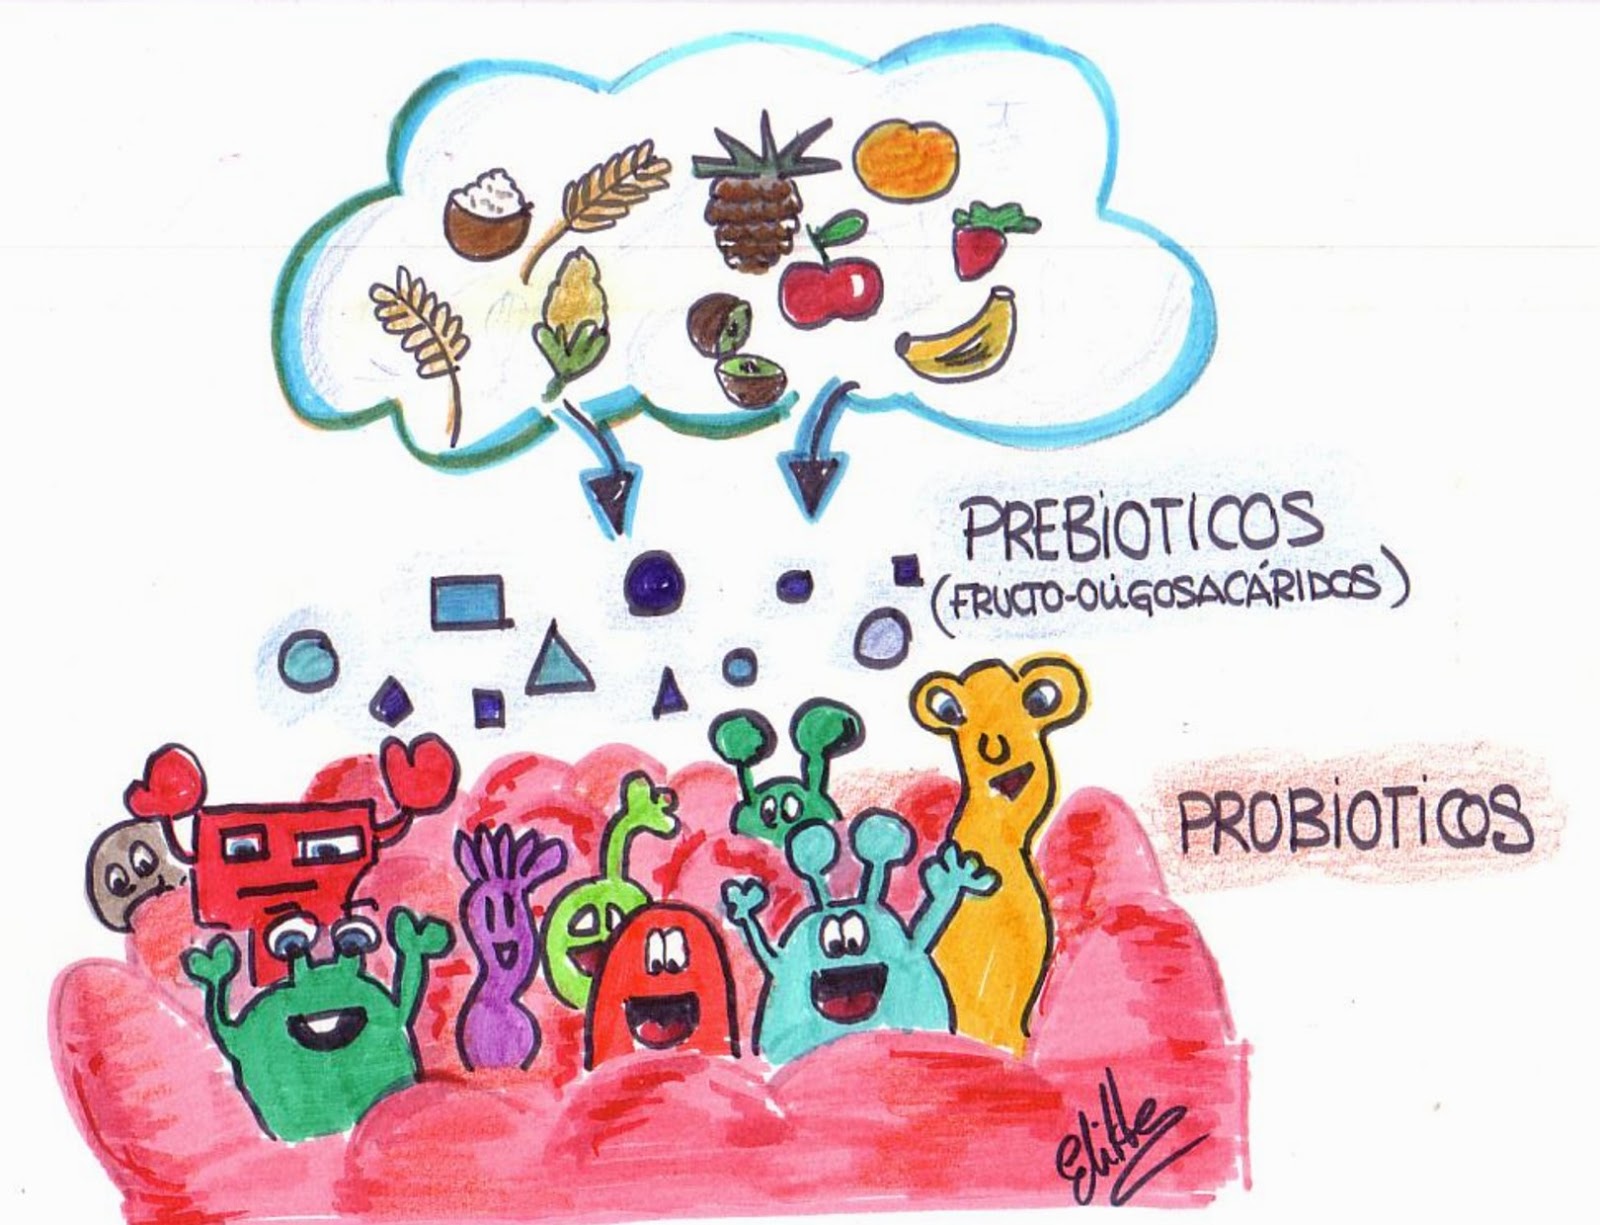 Antibioticos probioticos